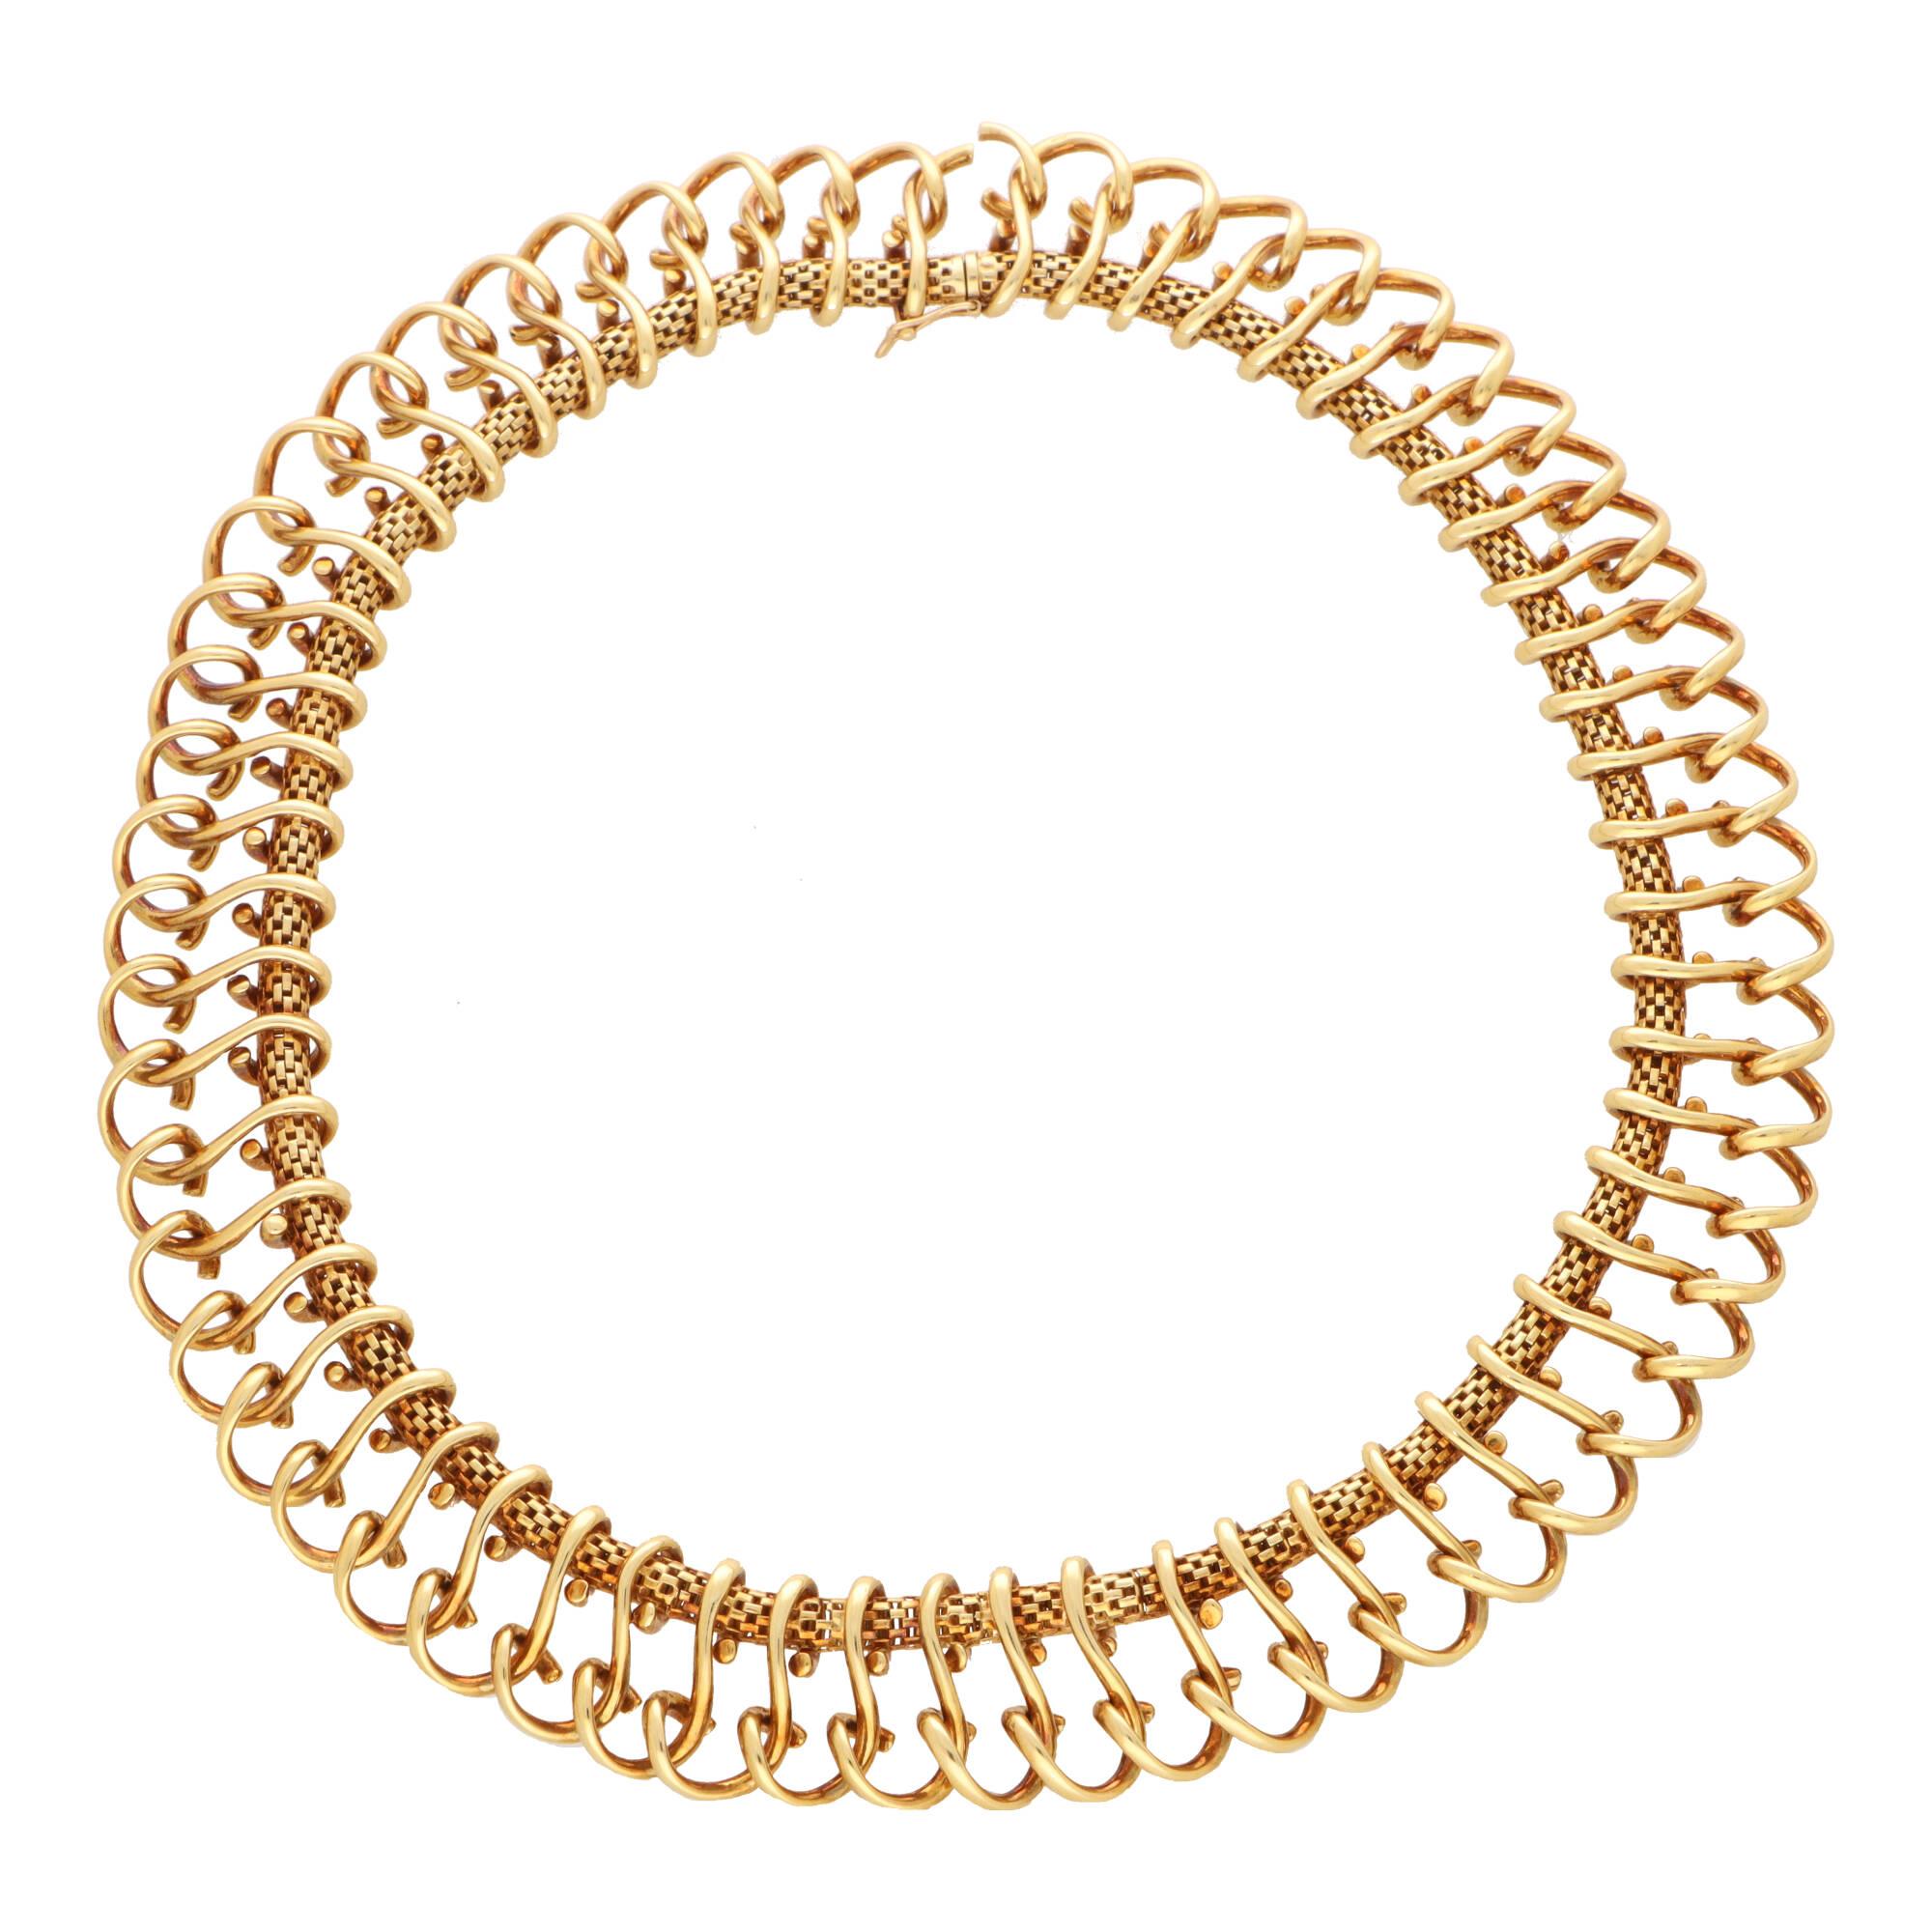 Eine schöne französische Halskette im Vintage-Stil aus 18 Karat Gelbgold.

Die Halskette besteht zunächst aus einem goldenen Maschenseil, das als Basis für das dekorative Design dient. Genau 69 stilisierte Loops aus massivem Gold hängen von der